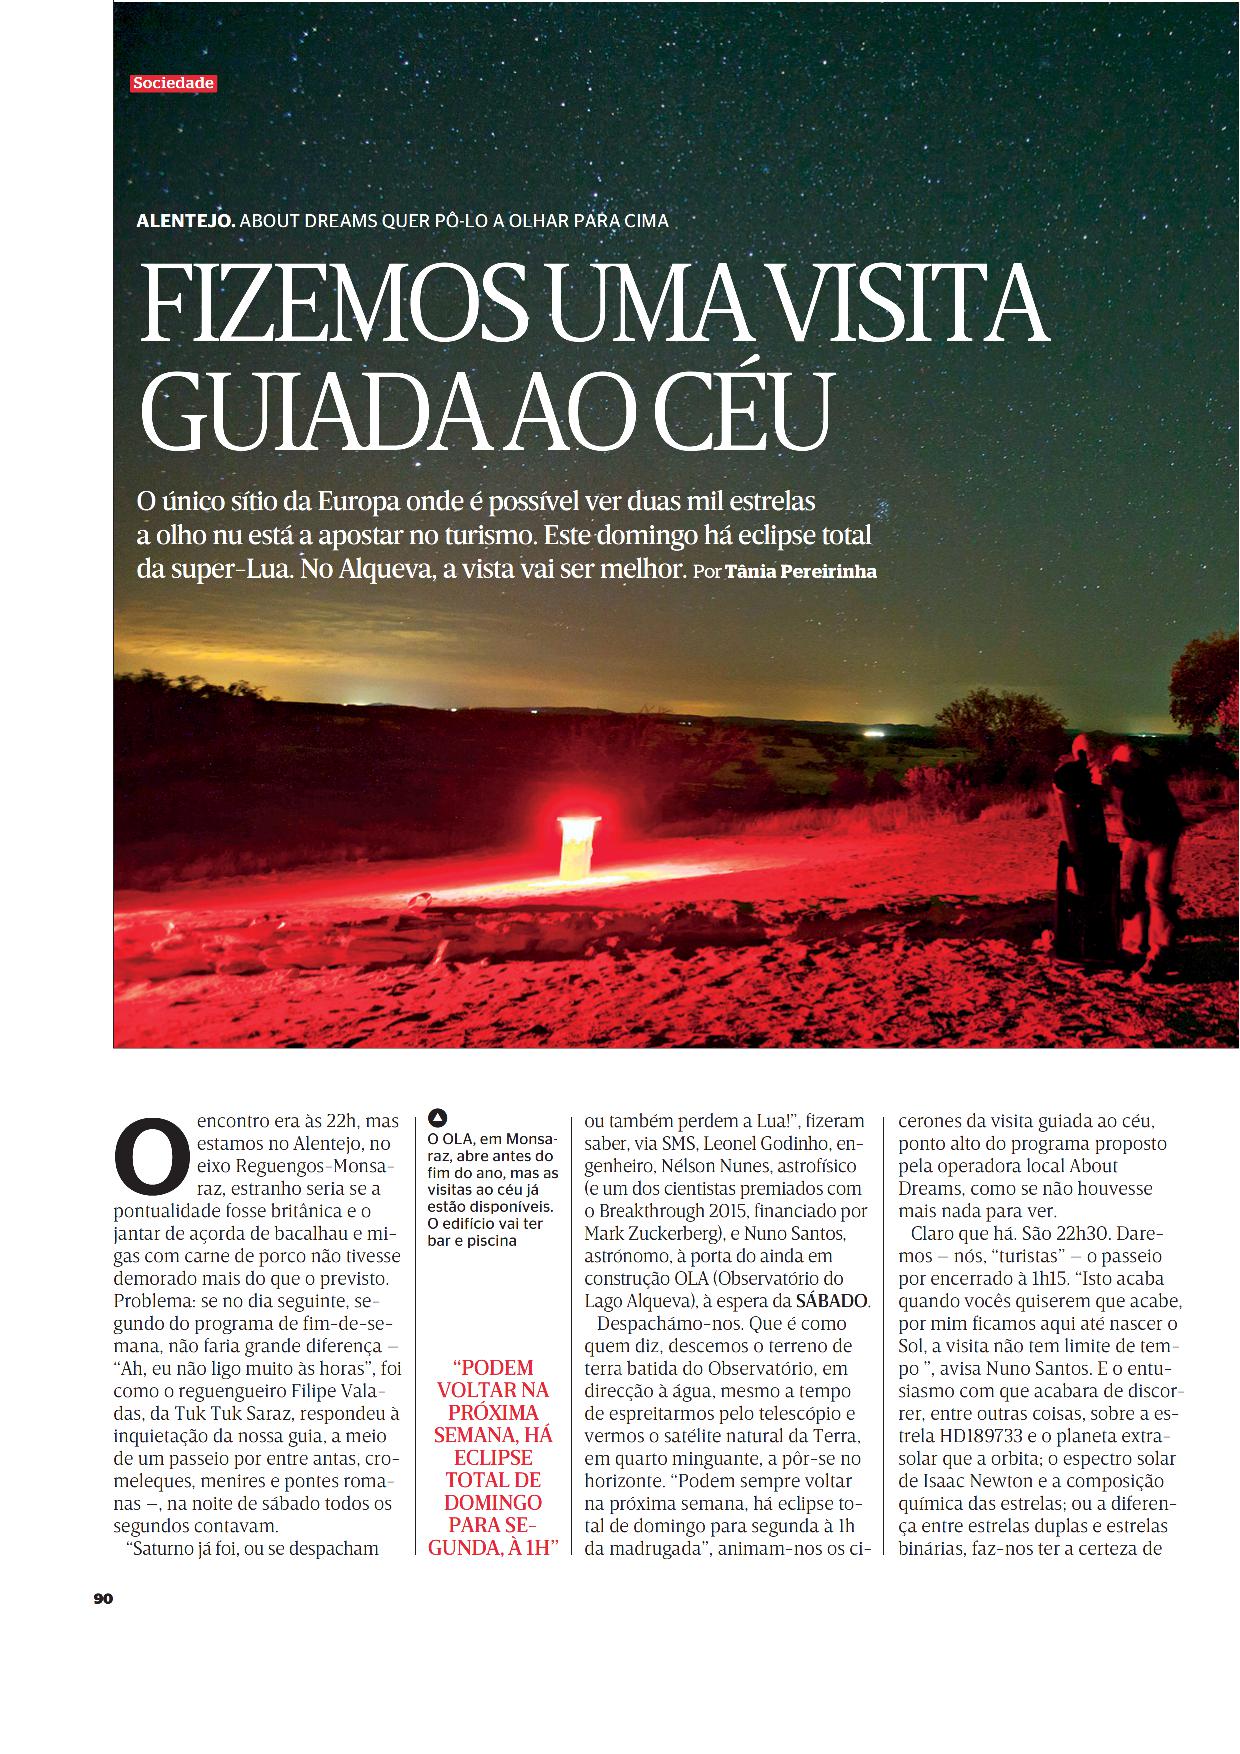 Story image for observatorio do lago alqueva from Revista Sábado